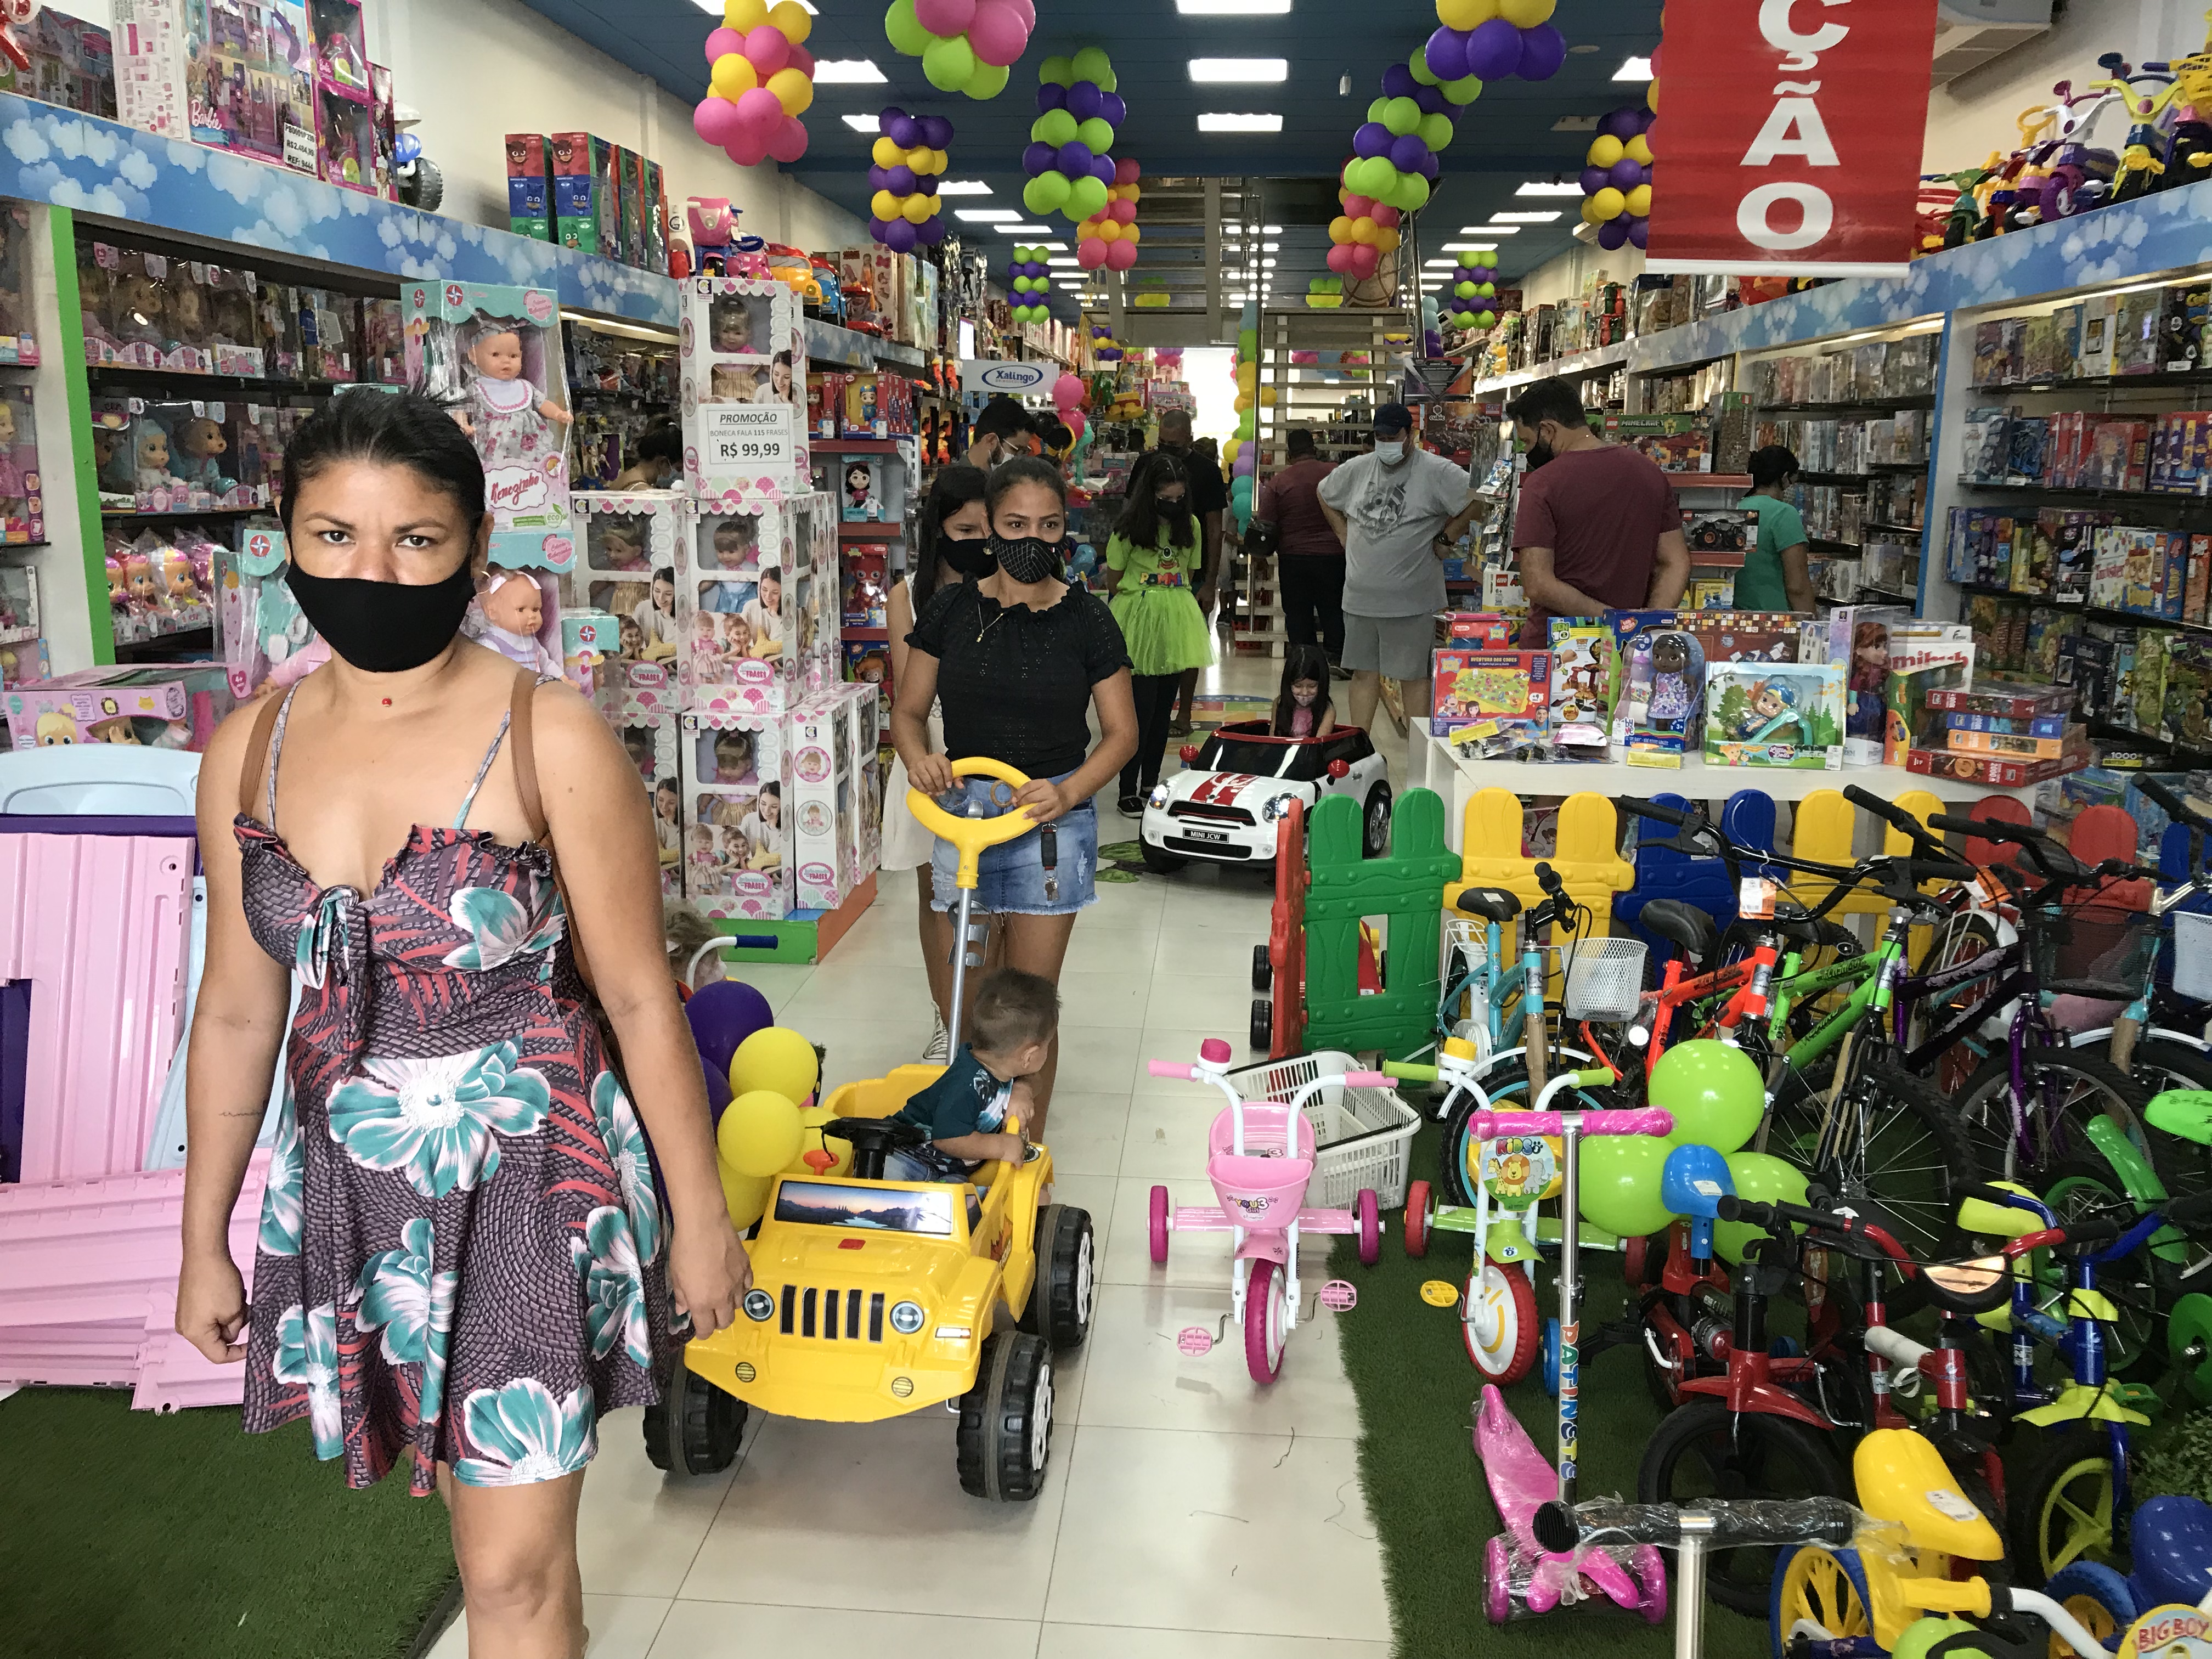 Loja Ponmer Brinquedos. “A maior loja de Brinquedos de Rondônia 